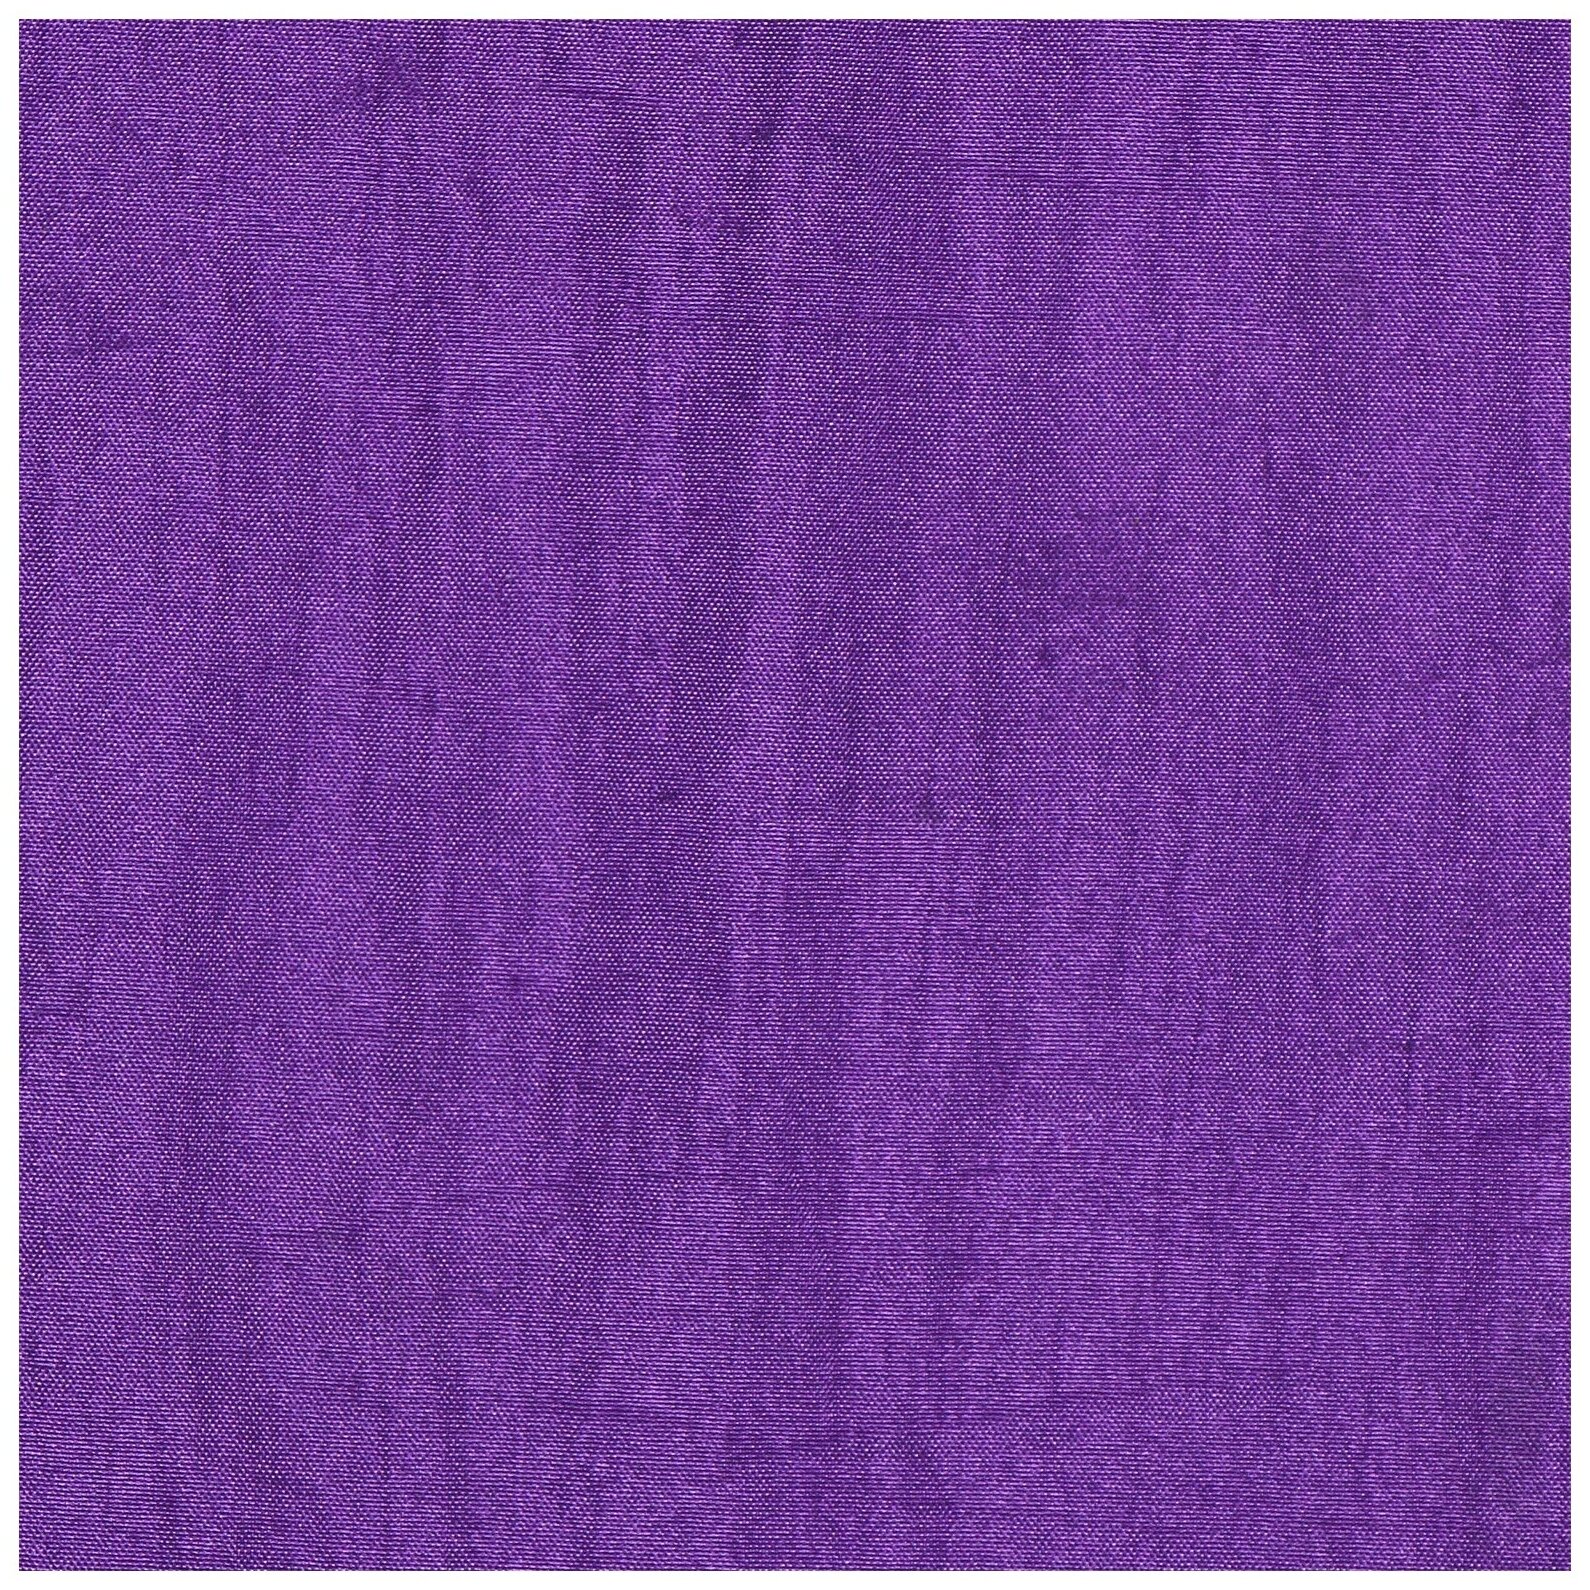 Гамак Sangh, для йоги, размер 250 × 140 см, цвет фиолетовый